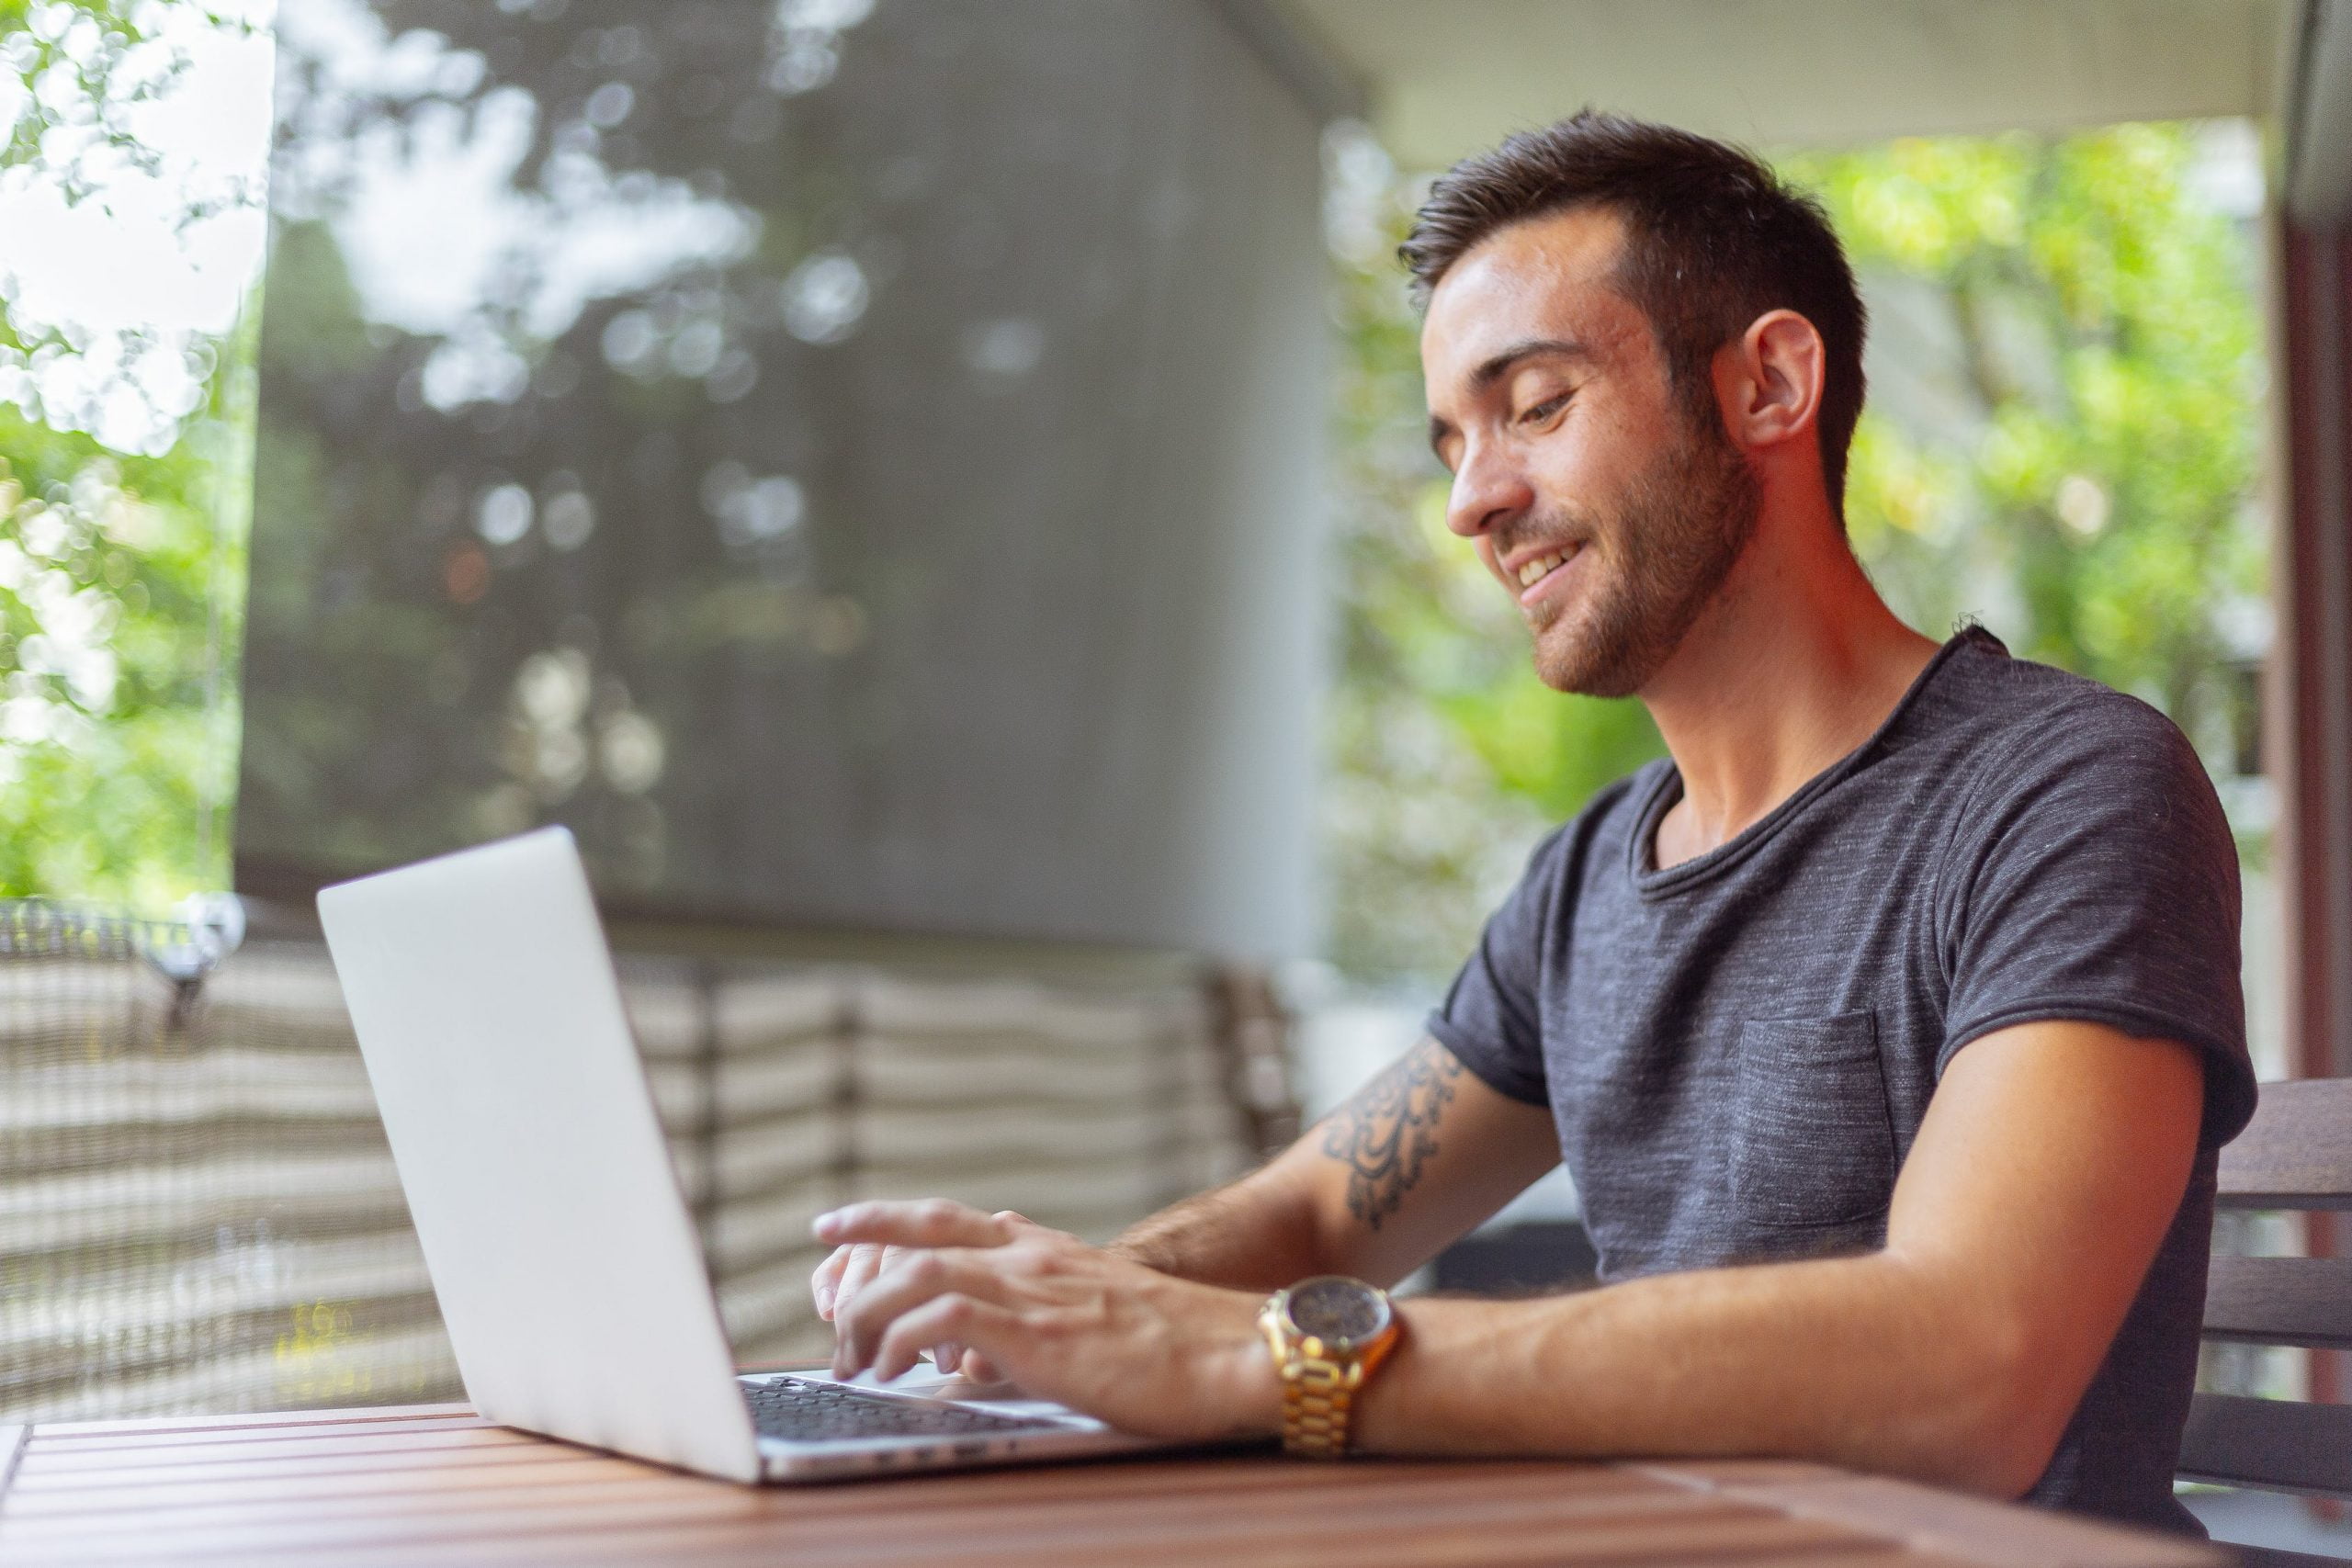 Man typing on laptop while smiling